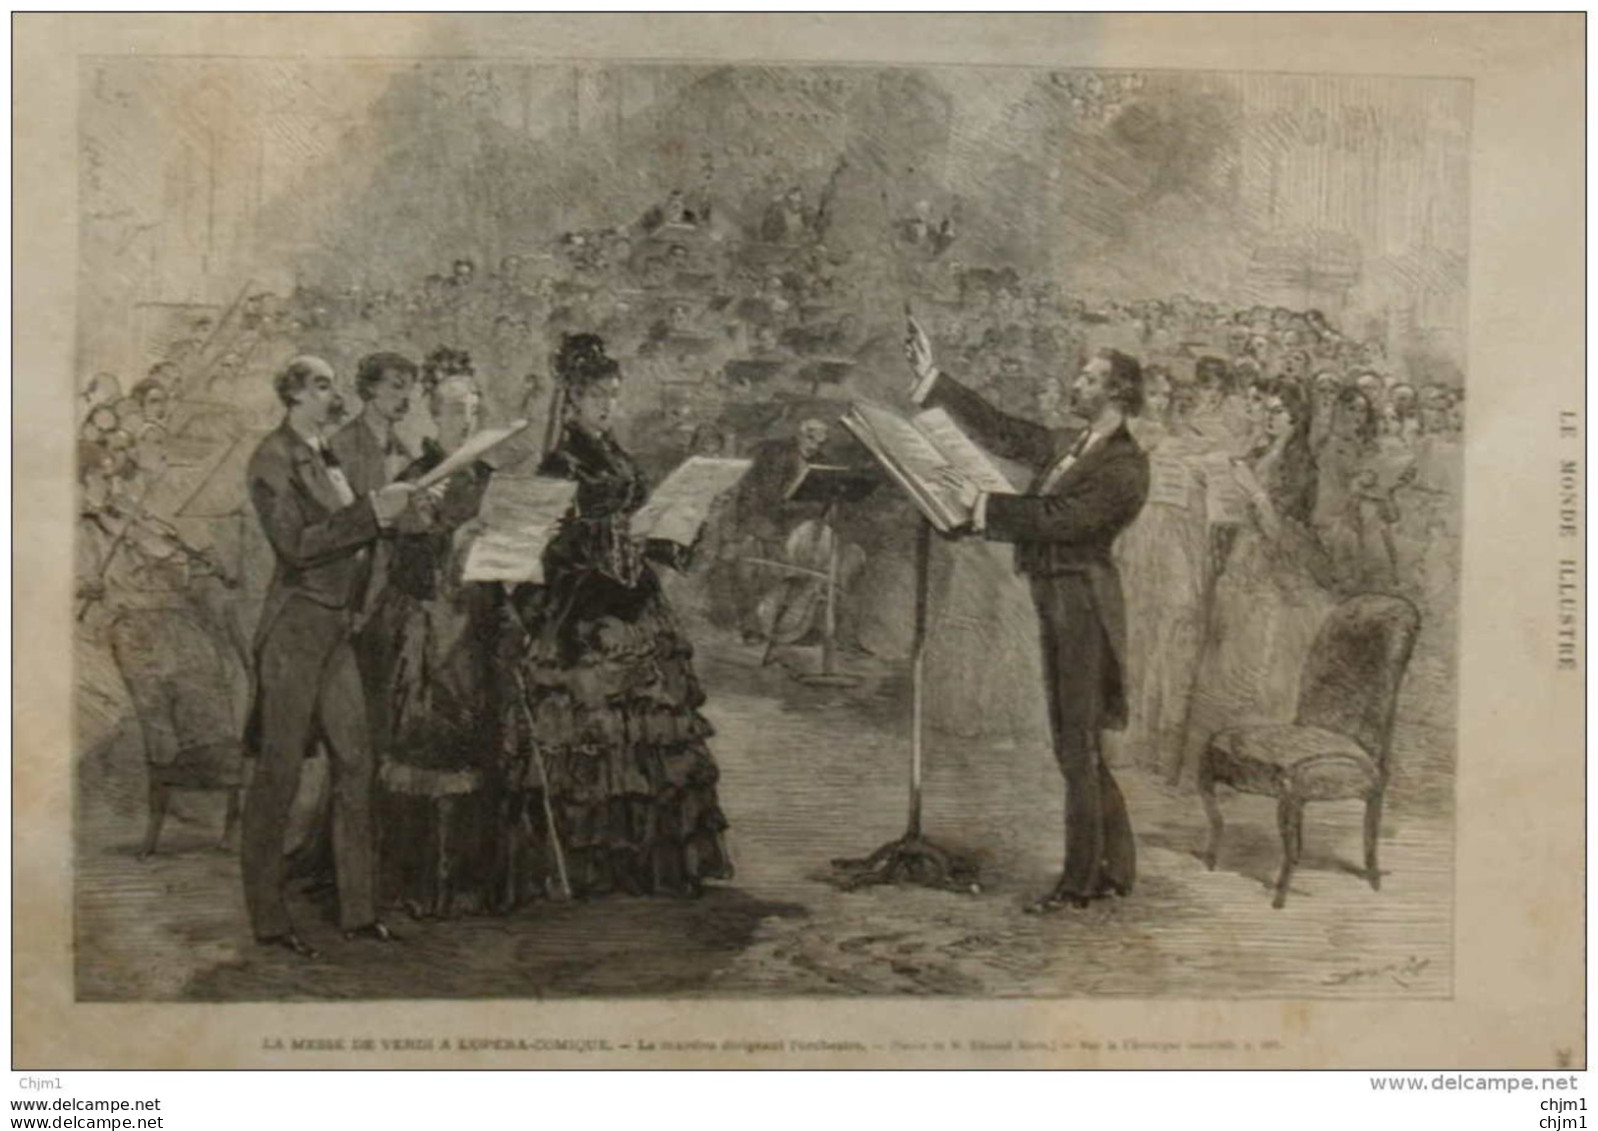 La Messe De Verdi à L'Opéra-comique - Le Maestro Dirigeant L'orchestre - Page Original De 1874 - Historische Dokumente